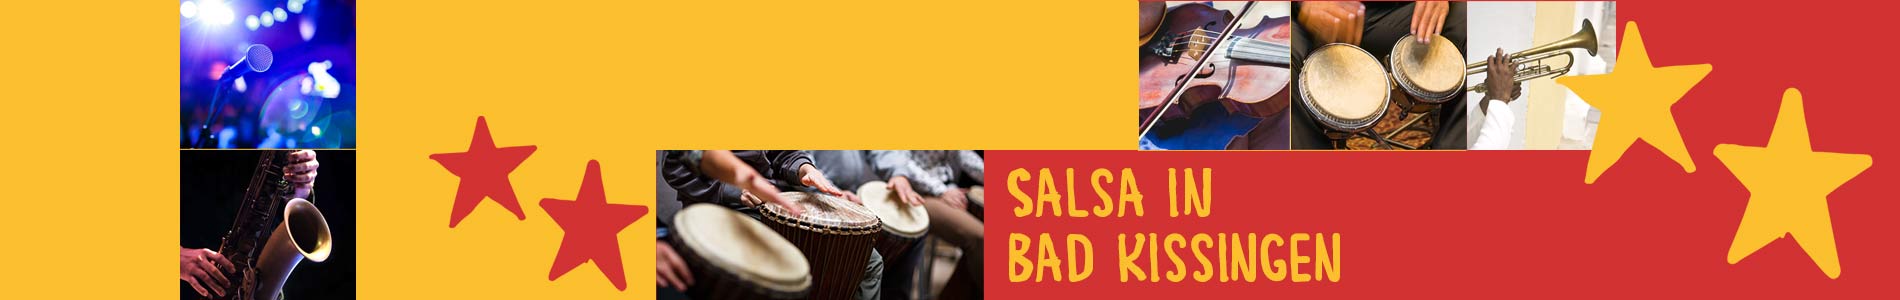 Salsa in Kissing – Salsa lernen und tanzen, Tanzkurse, Partys, Veranstaltungen